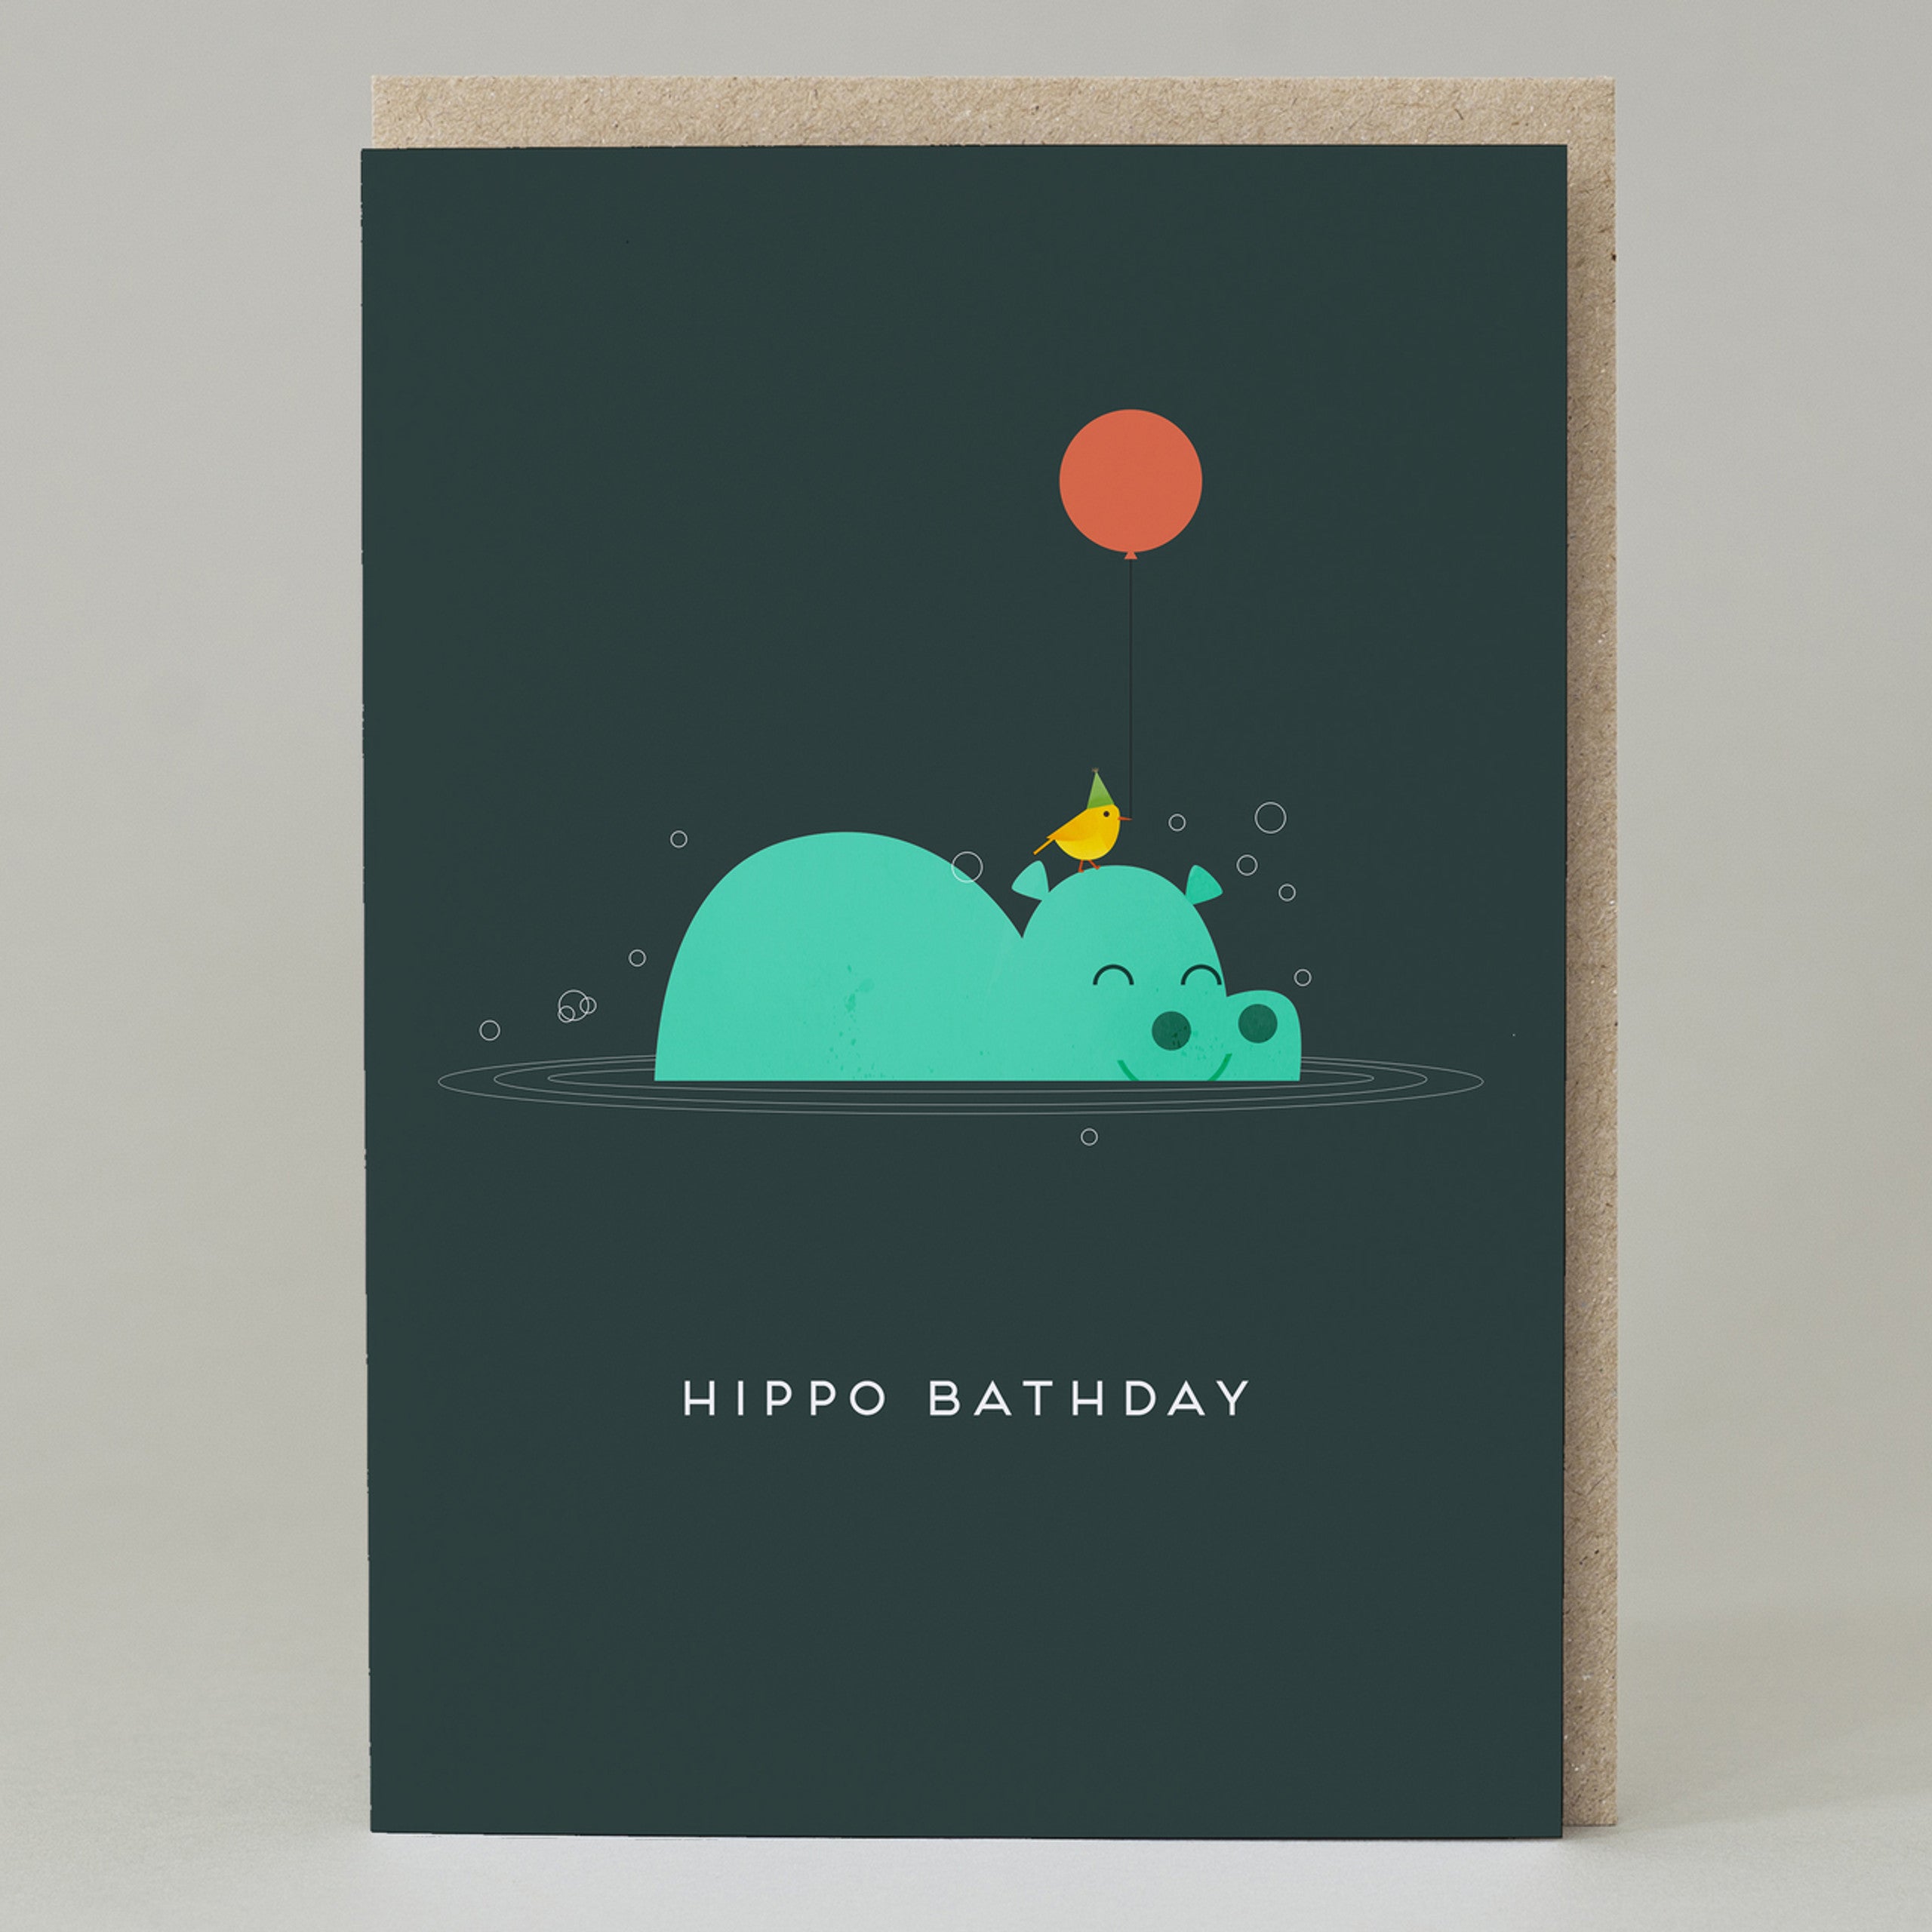 Hippo Bathday Card